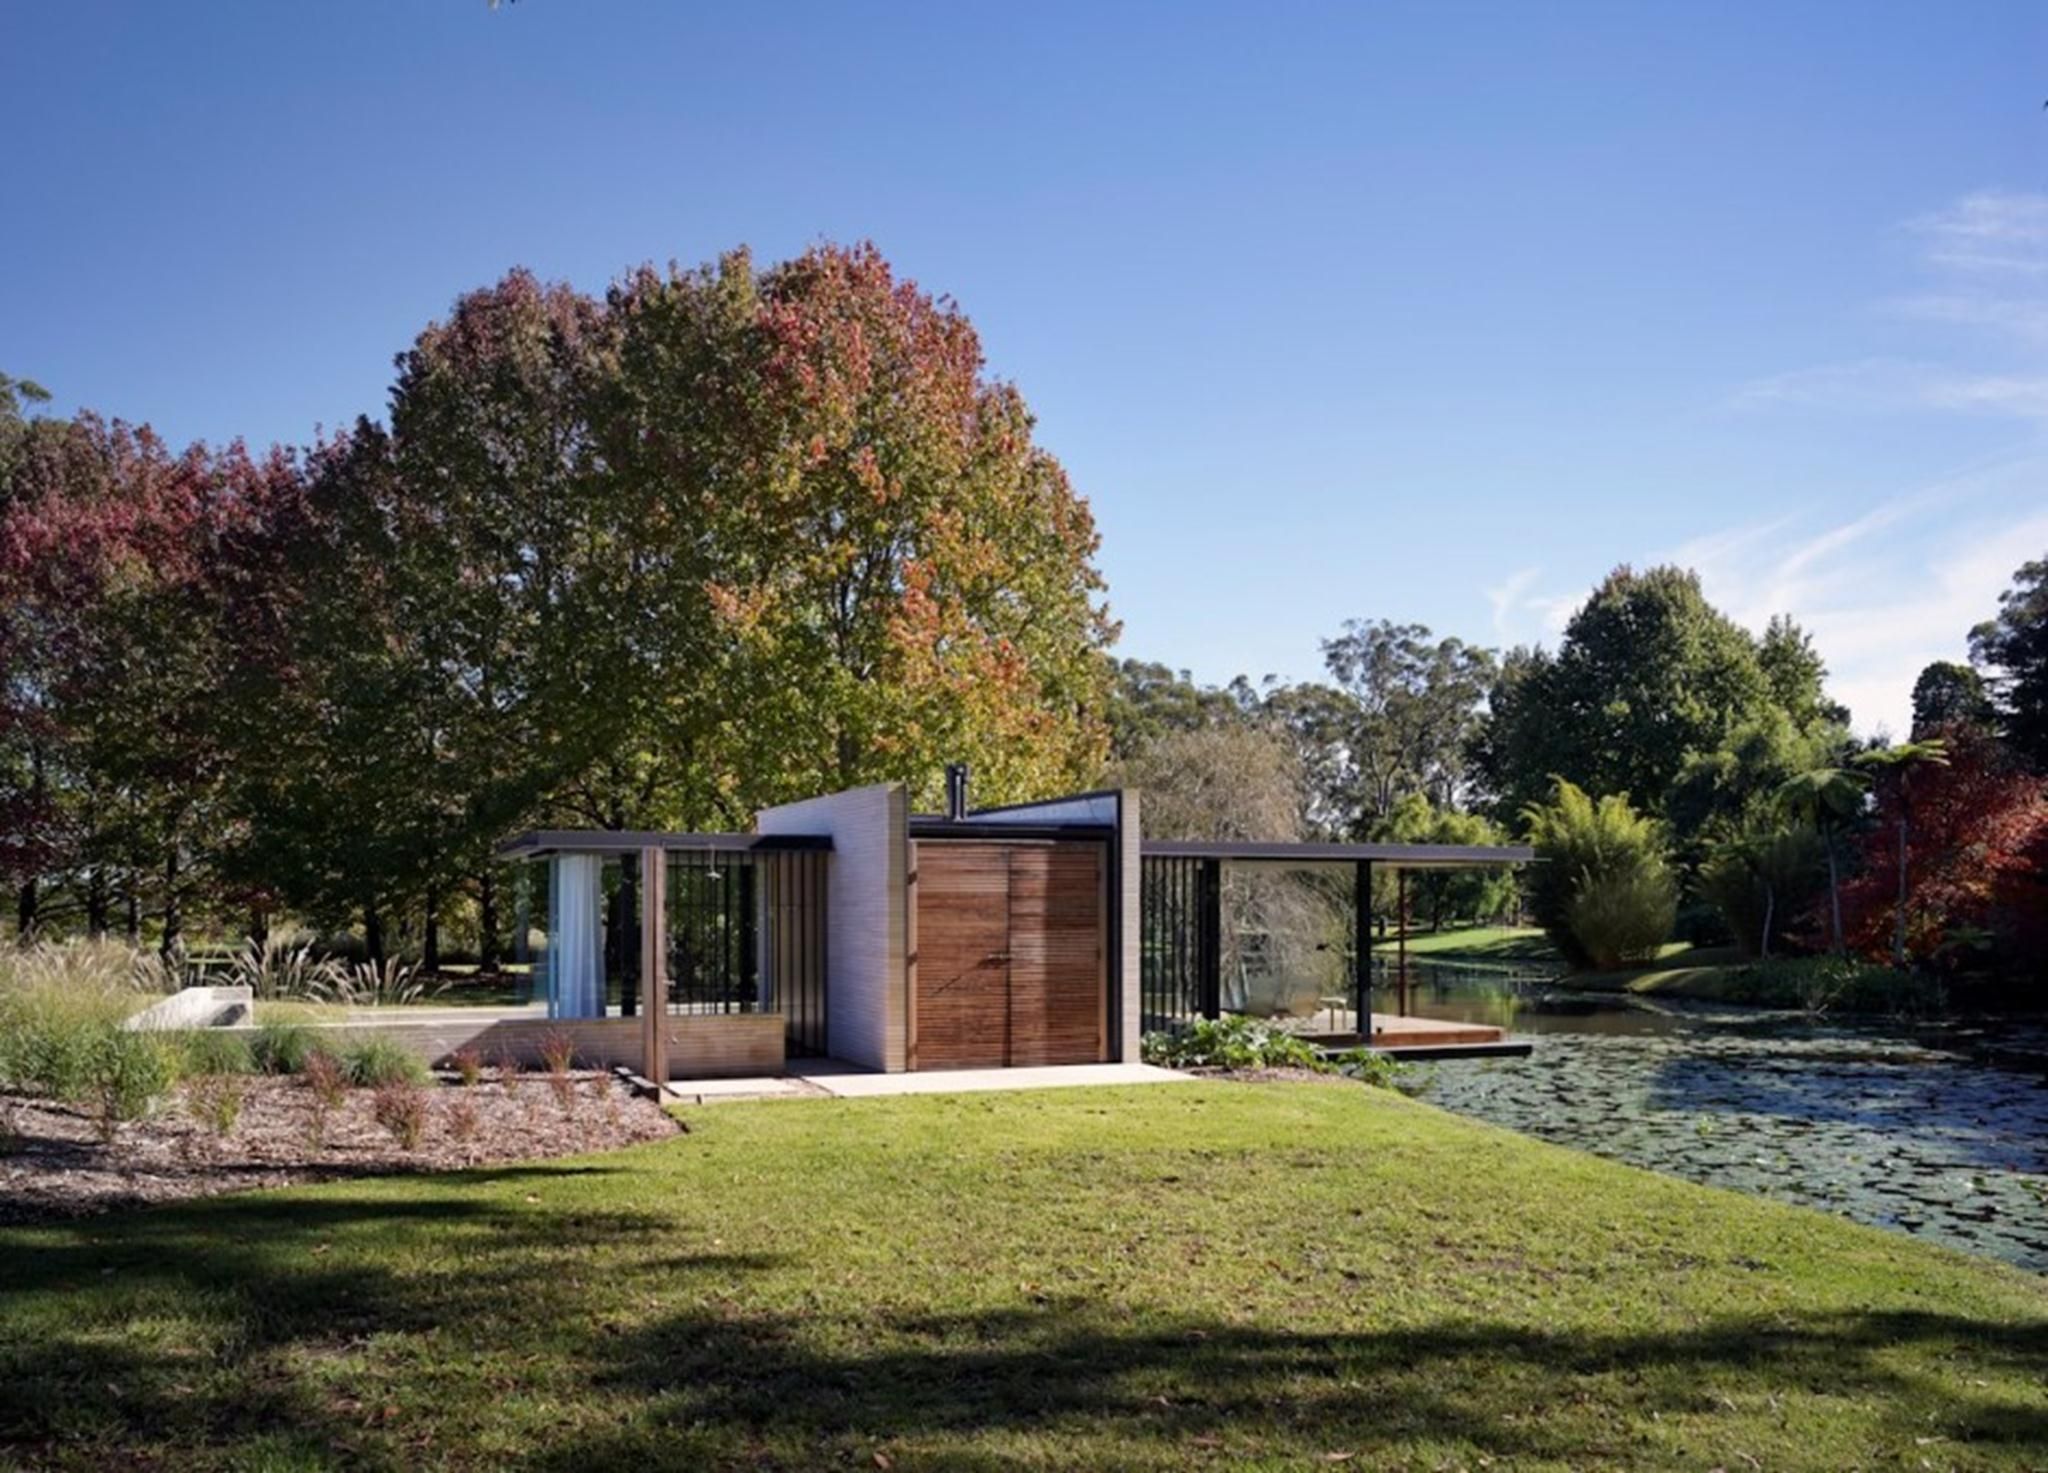 Thiết kế bởi kiến ​​trúc sư người Úc Matthew Woodward, ngôi nhà xinh đẹp này được bao quanh bởi thiên nhiên tươi mát là những vườn cây và đập nước tự nhiên.